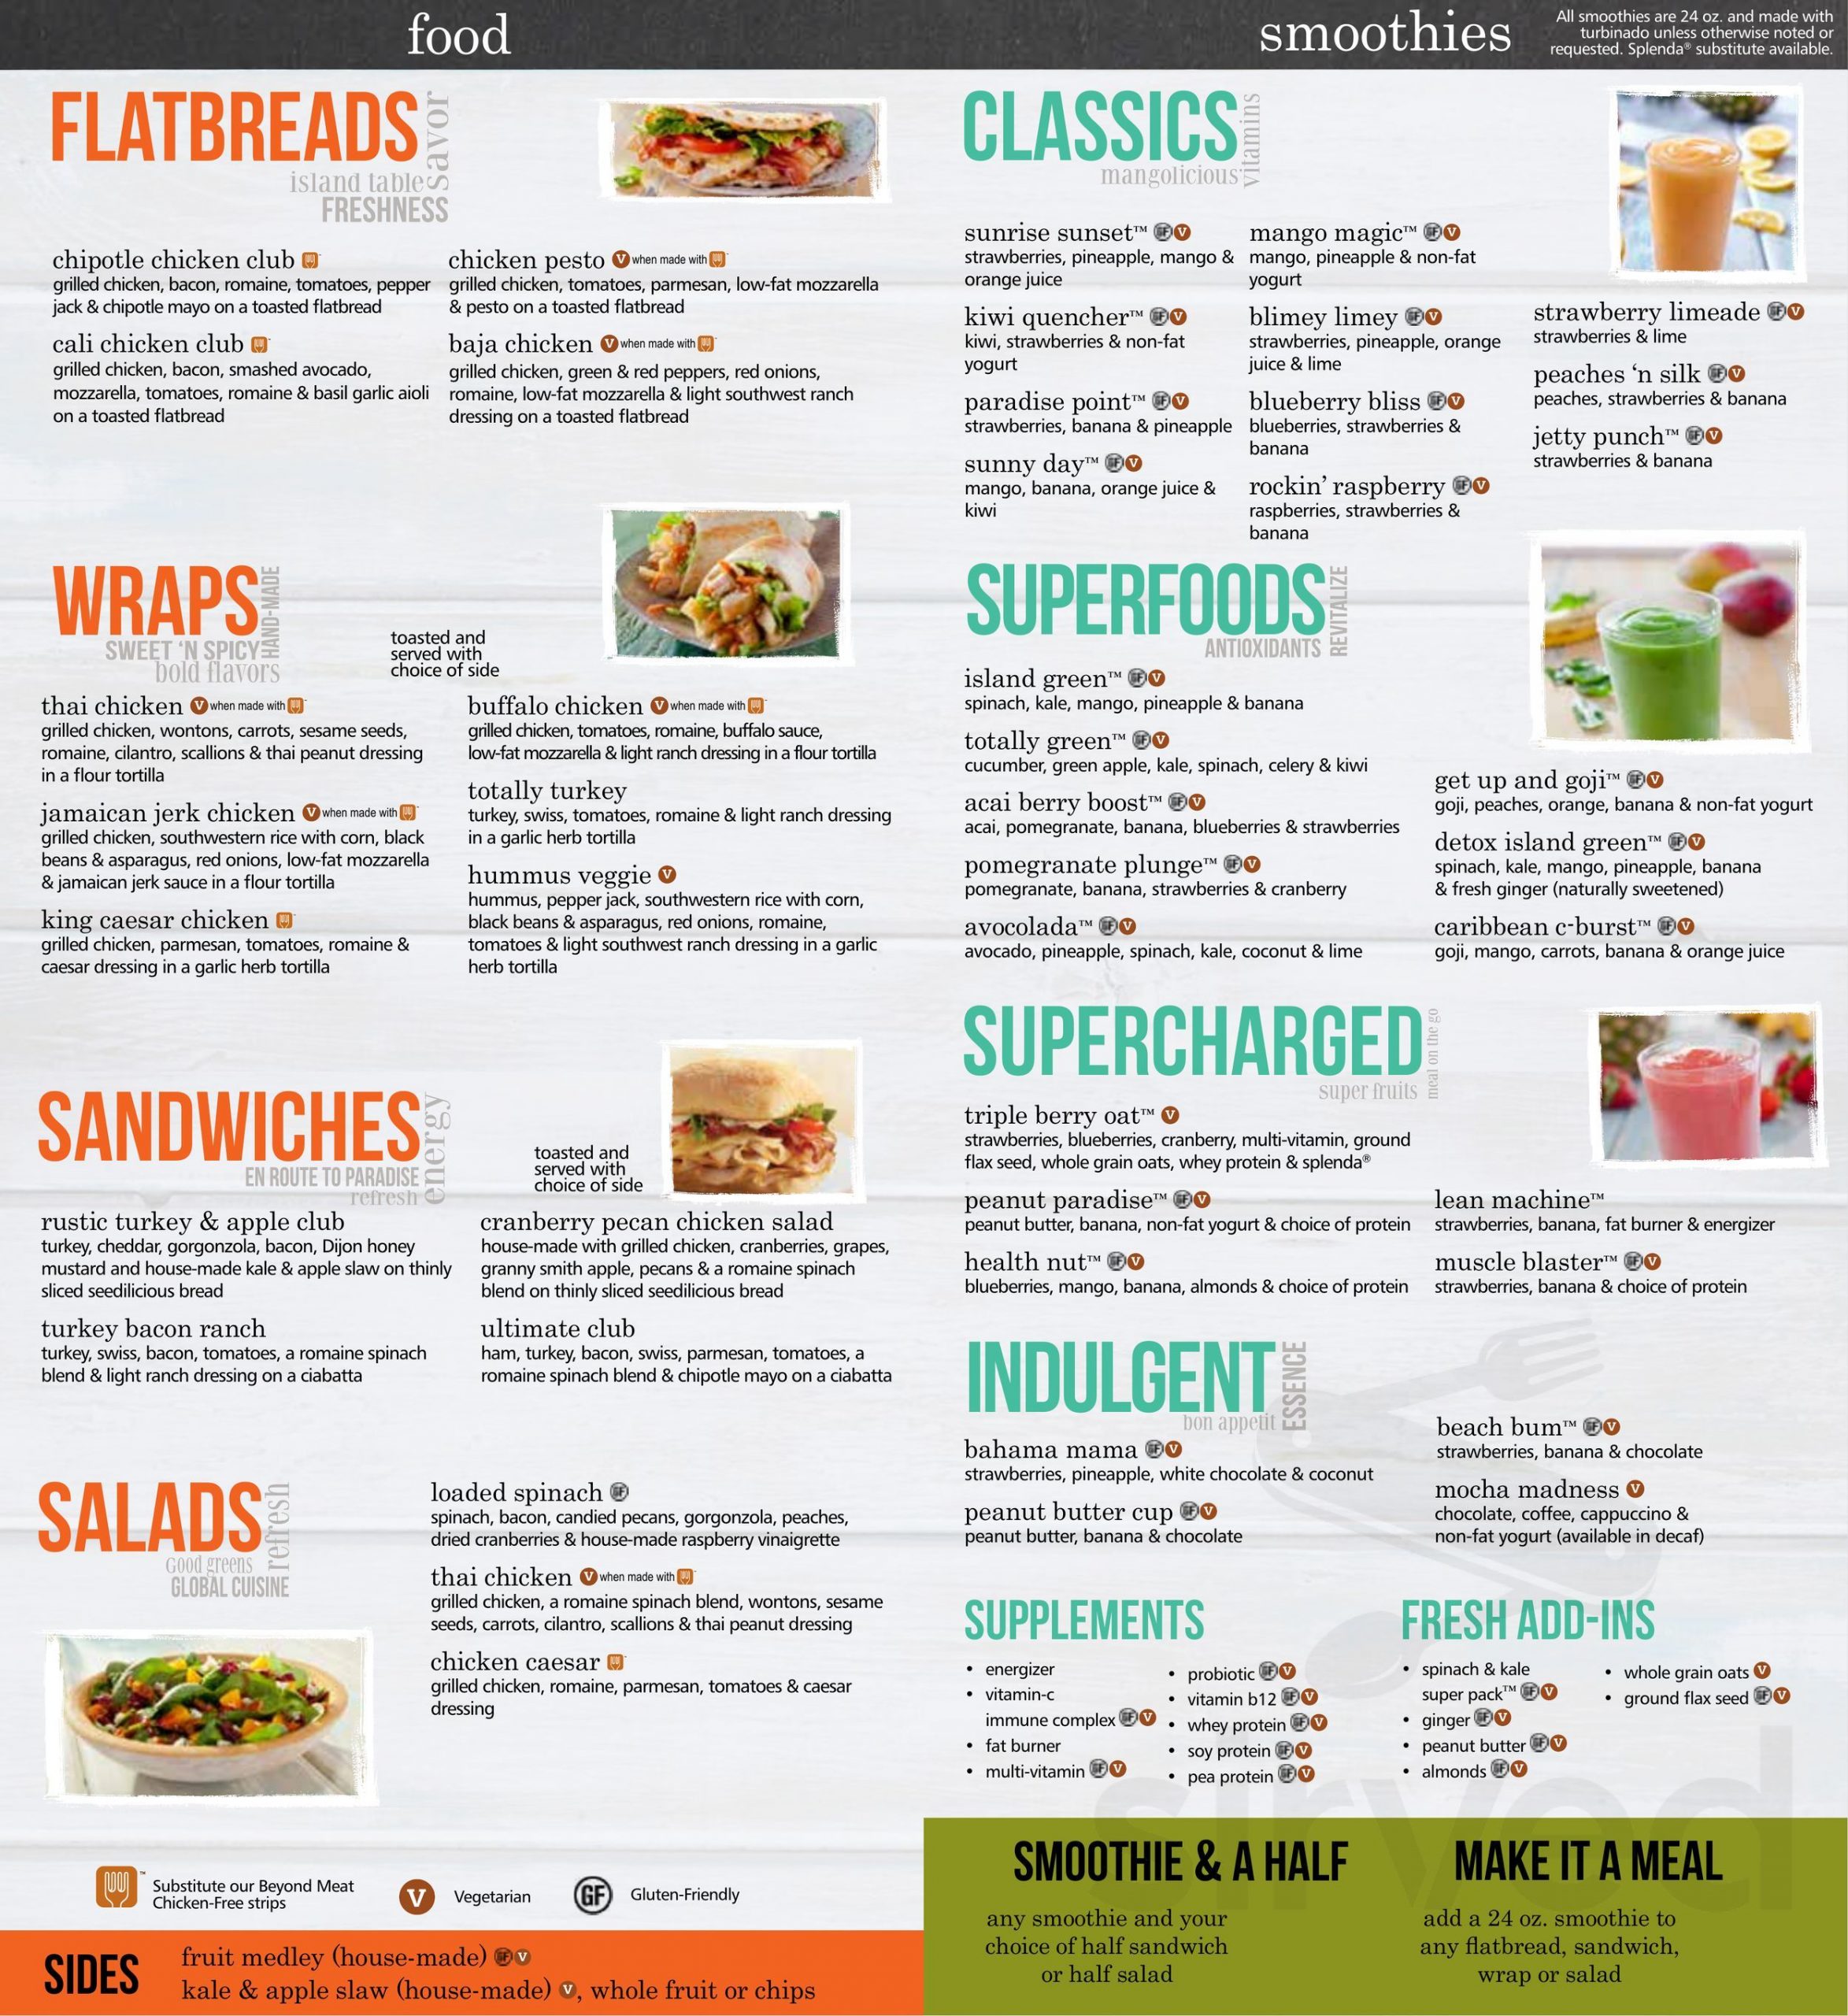 Tropical Smoothie Cafe menu in Plantation, Florida, USA